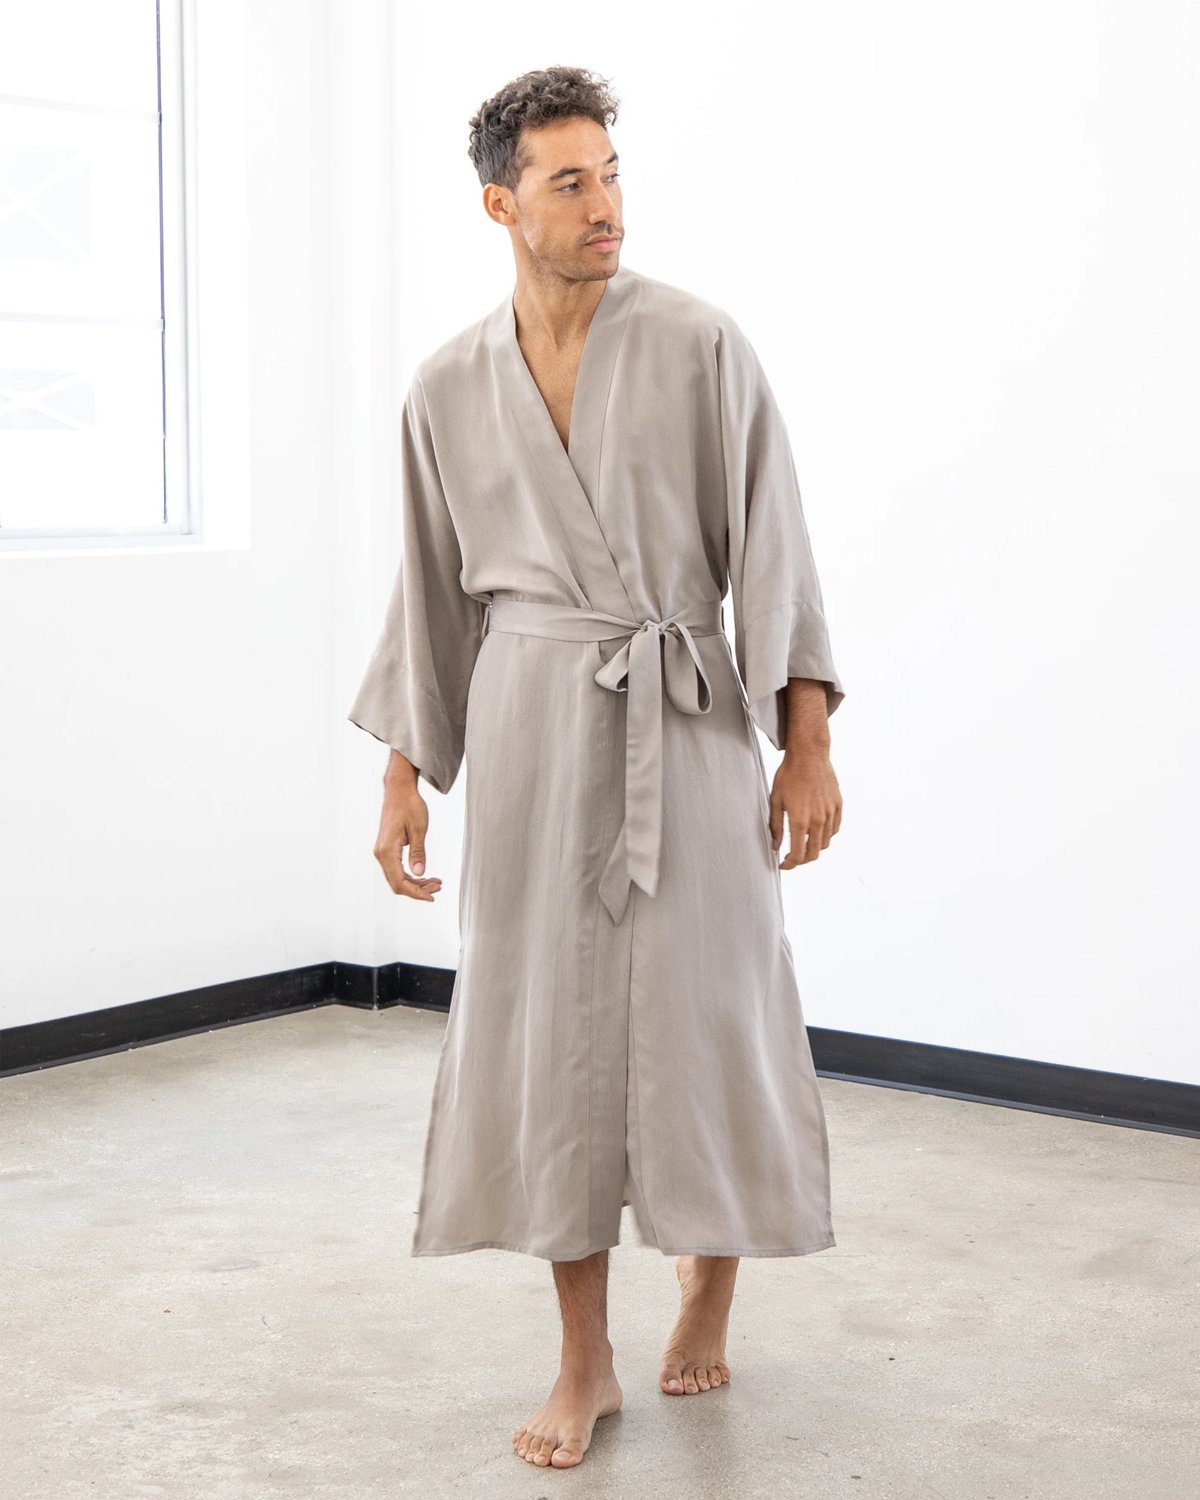 niLuu Men's Kimono Robe SAND One Size